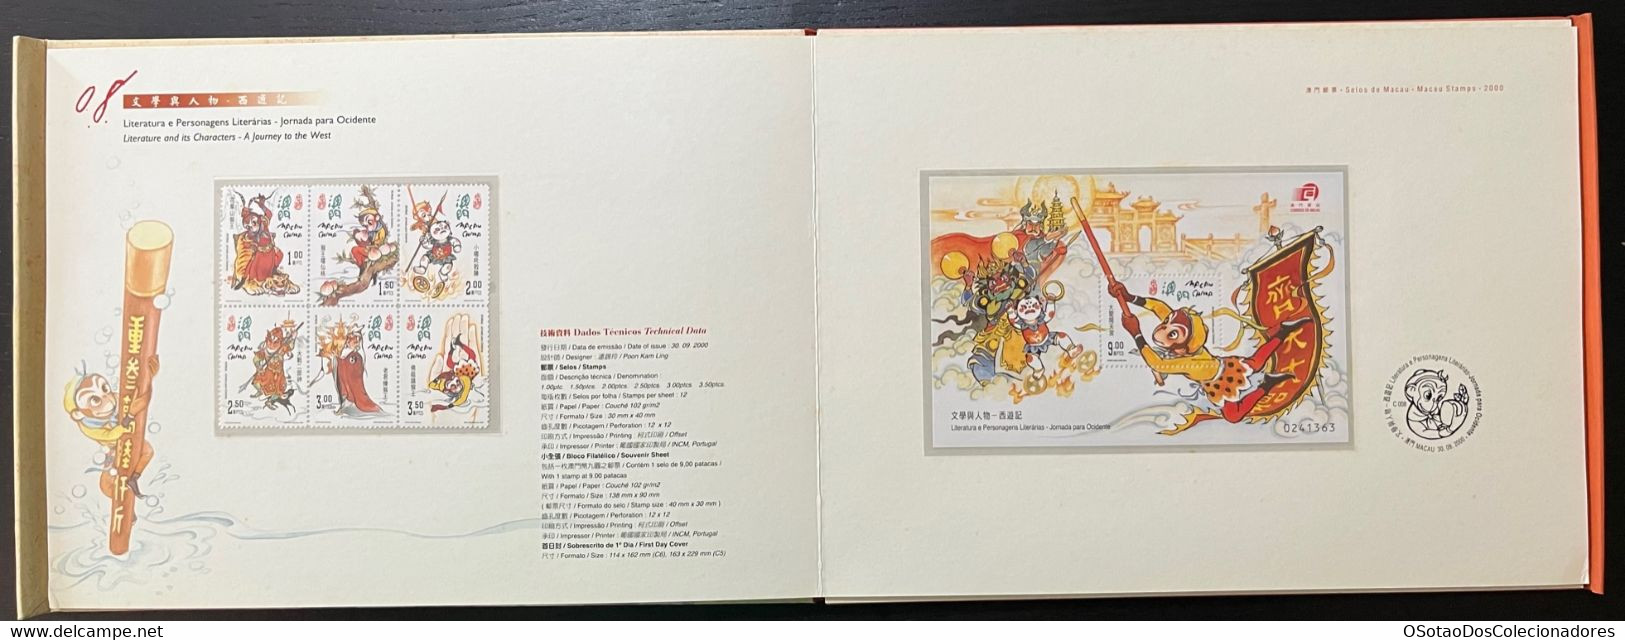 Macau Macao - China Chine - Annual Album 2000 - Macao's Stamps - Livro Anual de Selos de Macau 2000 - Carteira Jaarboek